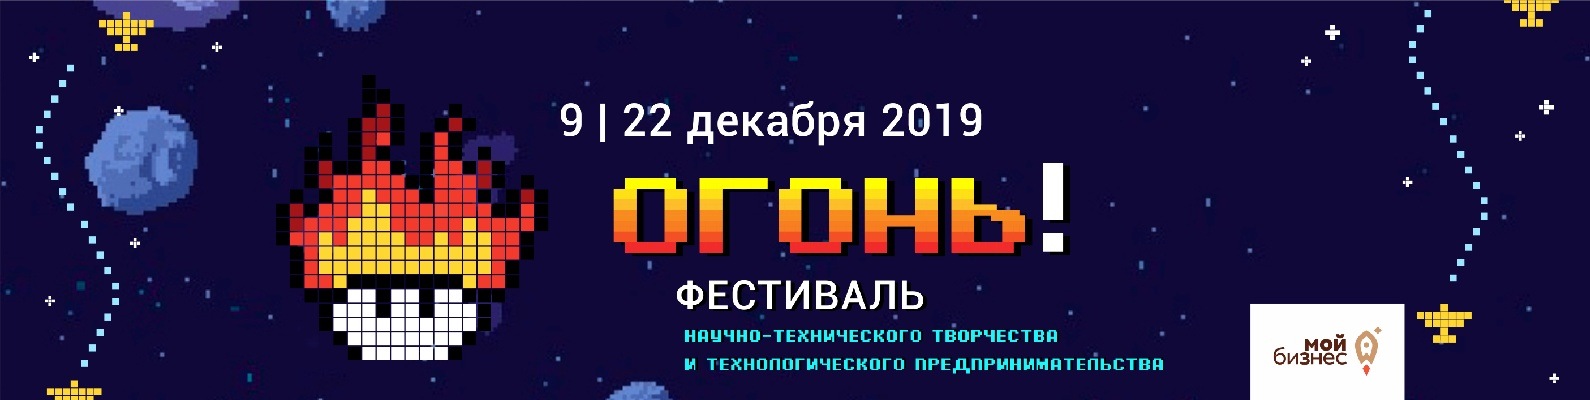 Всероссийский Фестиваль научно-технического творчества и молодежного предпринимательства «Огонь»